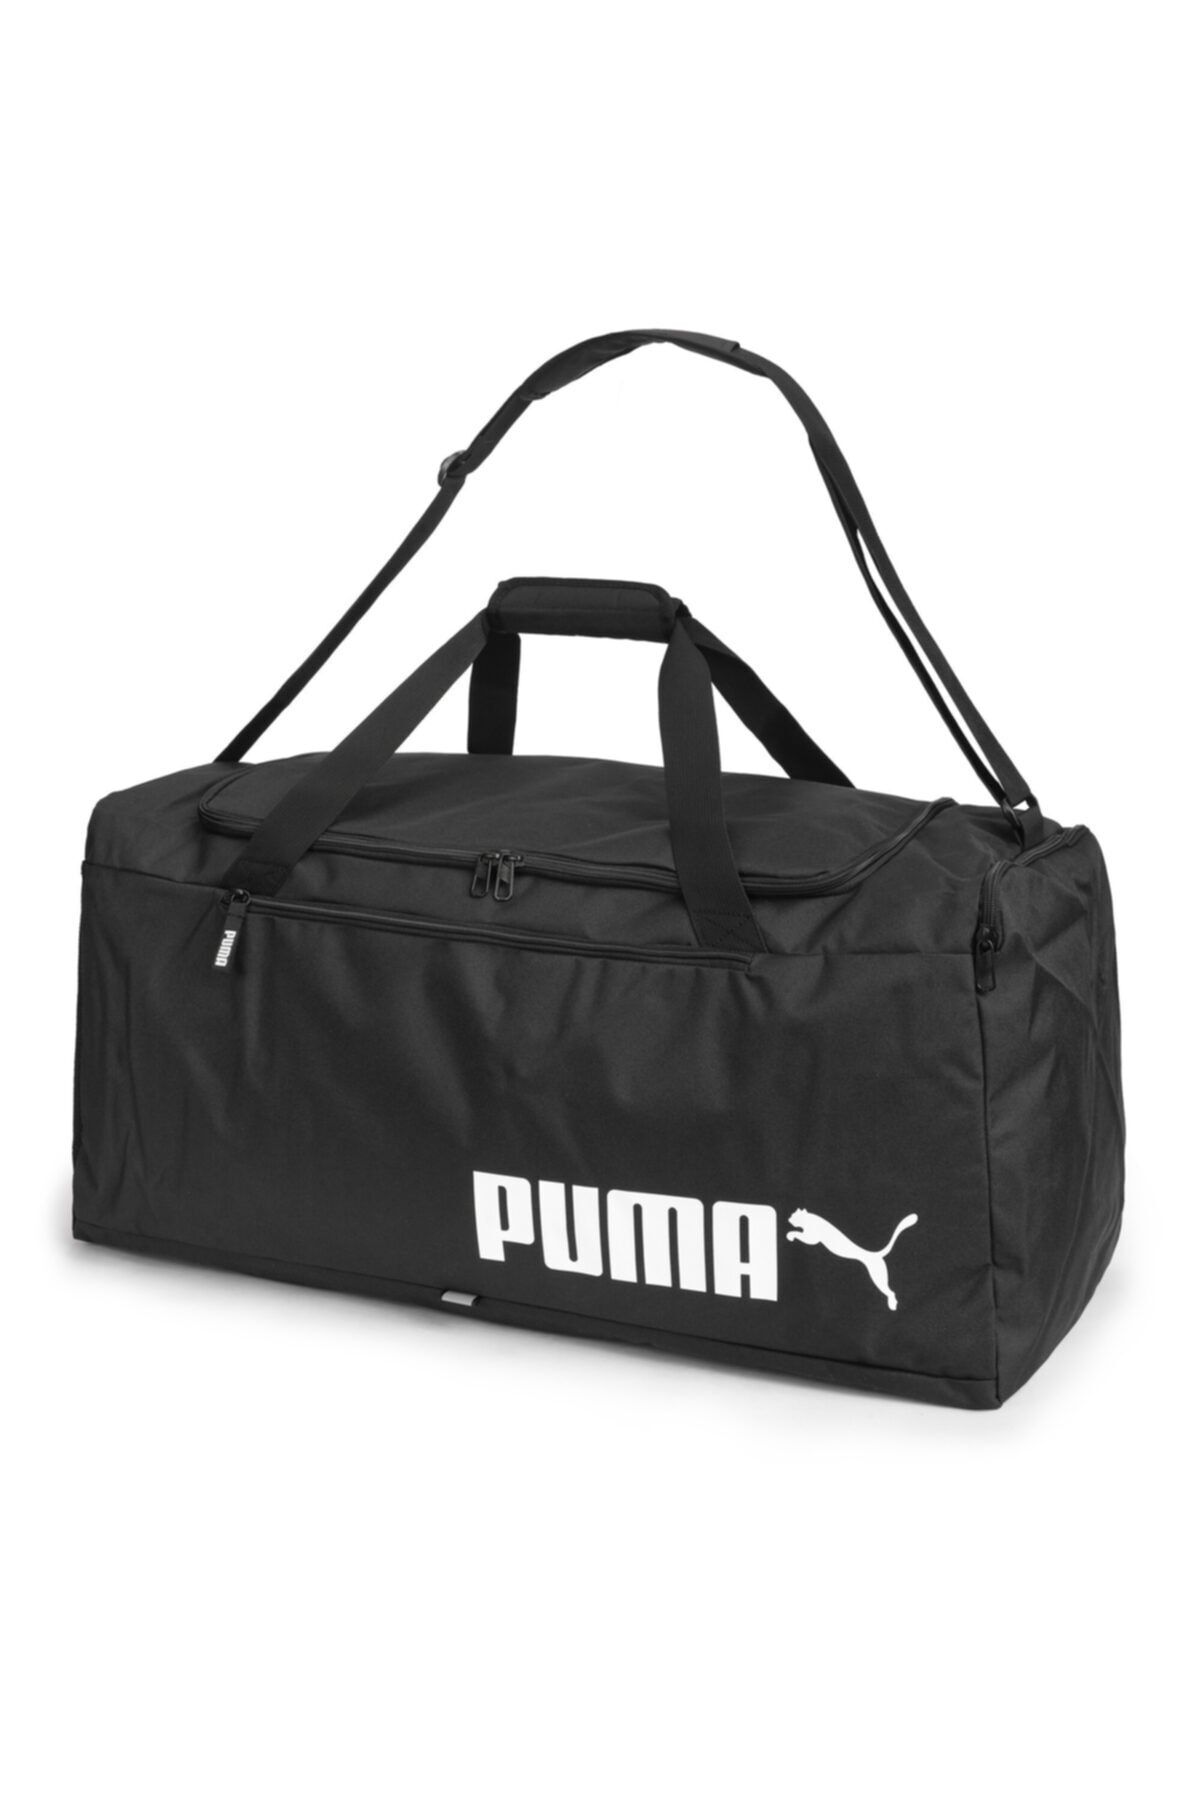 Puma Fundamentals No. 2 Large Sports Bag | Black - Çanta